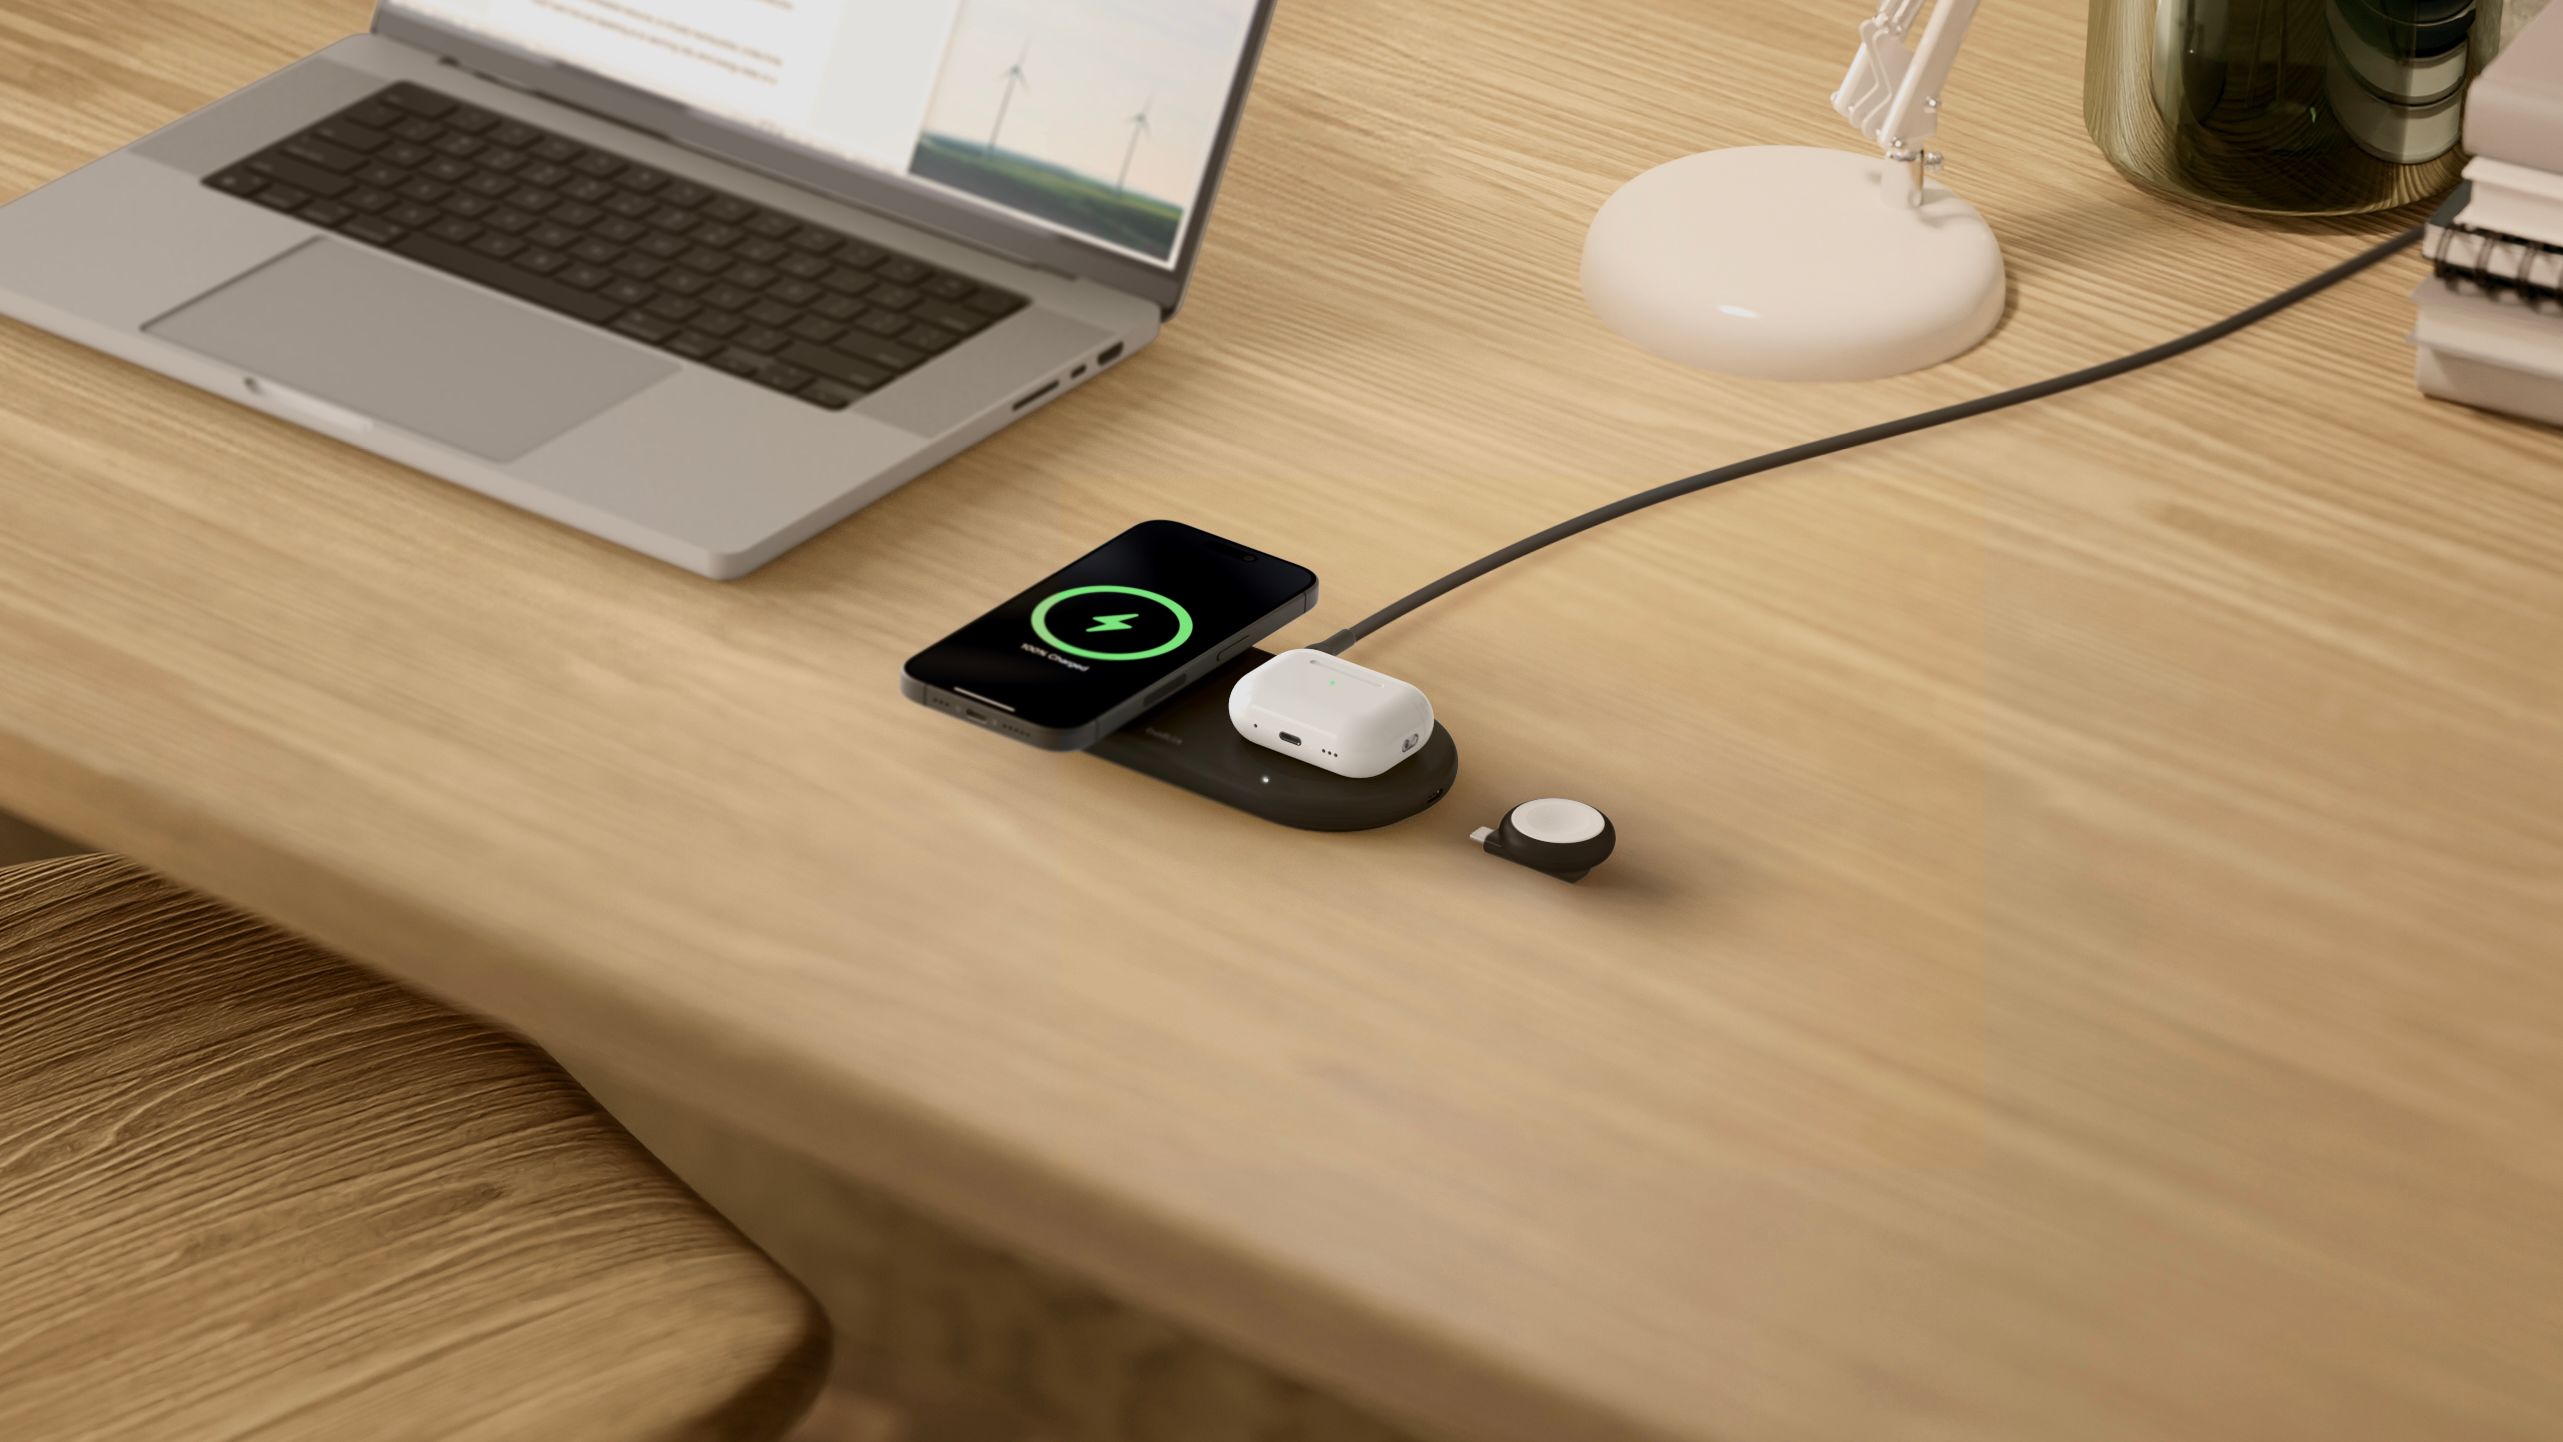 A Belkin wireless charging pad on a wooden desk.